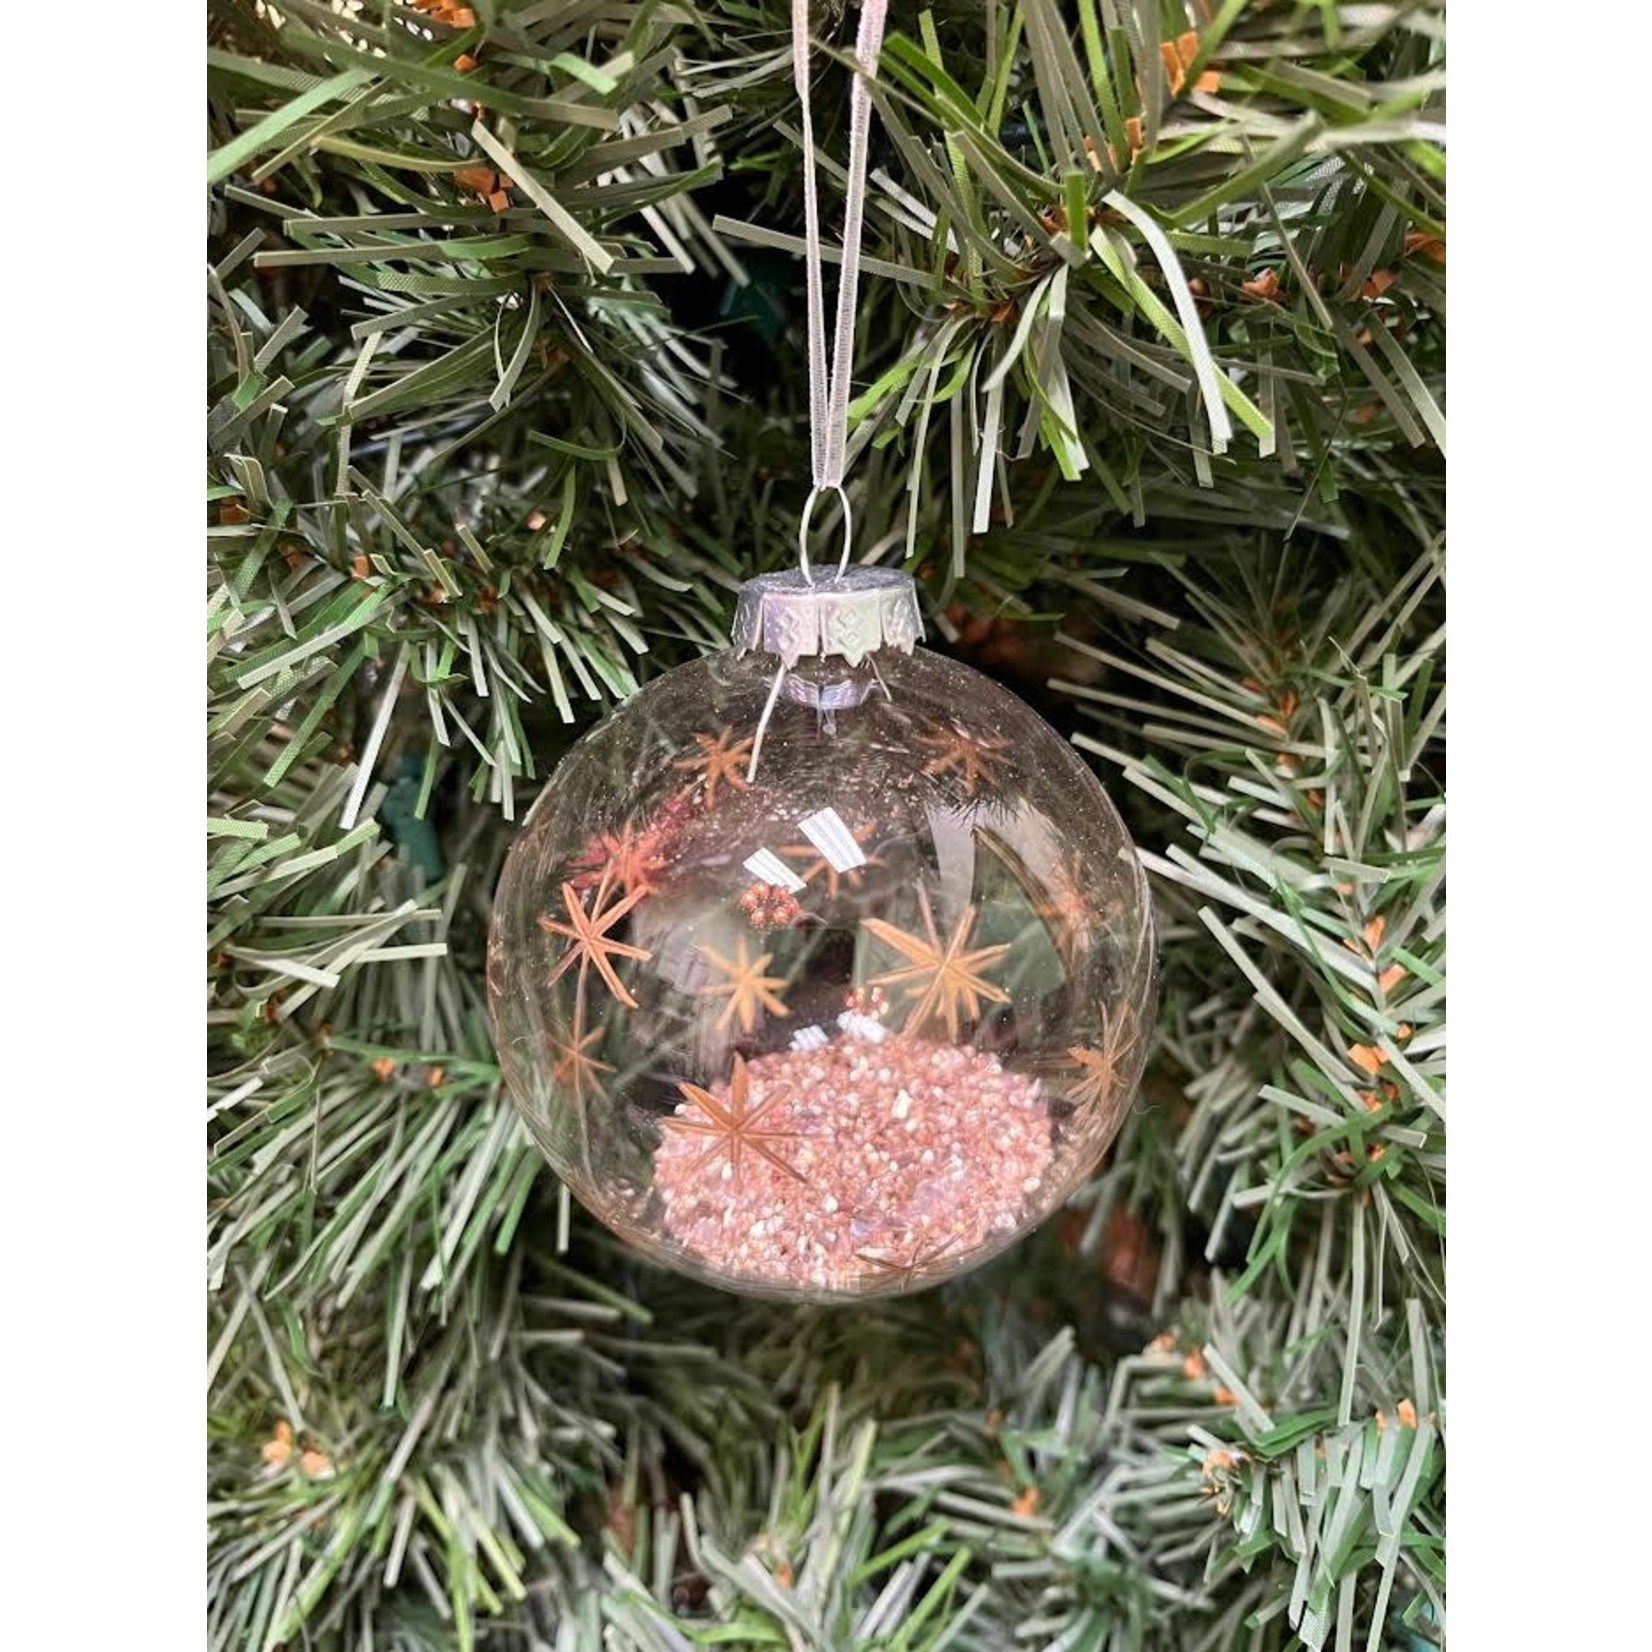 Zodax Clear Ball with Silver Confetti and Deco Ornament Small